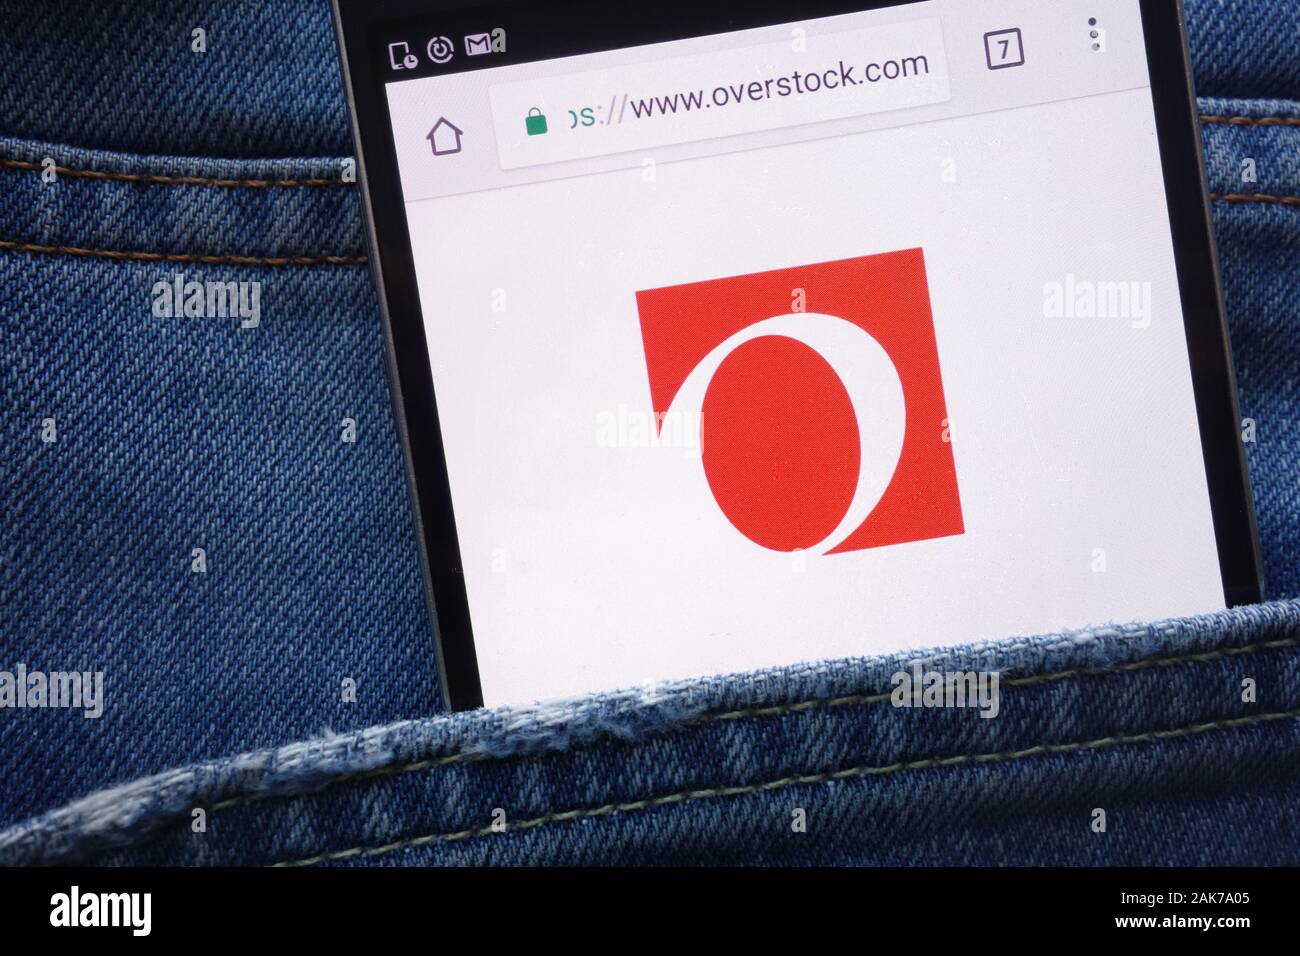 Overstock website displayed on smartphone hidden in jeans pocket Stock Photo